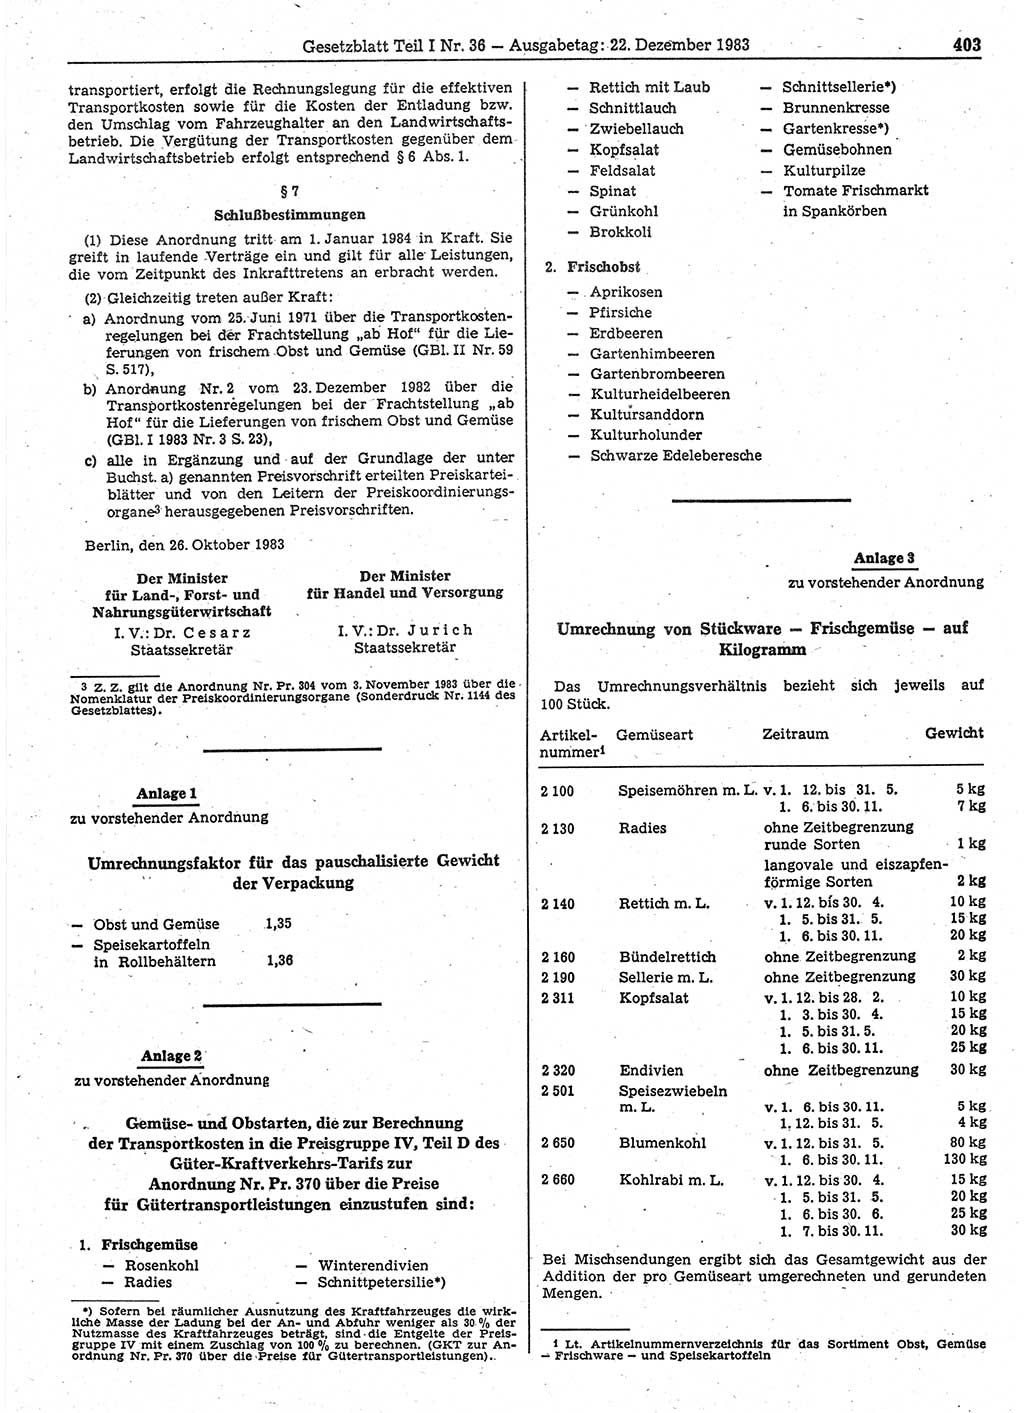 Gesetzblatt (GBl.) der Deutschen Demokratischen Republik (DDR) Teil Ⅰ 1983, Seite 403 (GBl. DDR Ⅰ 1983, S. 403)